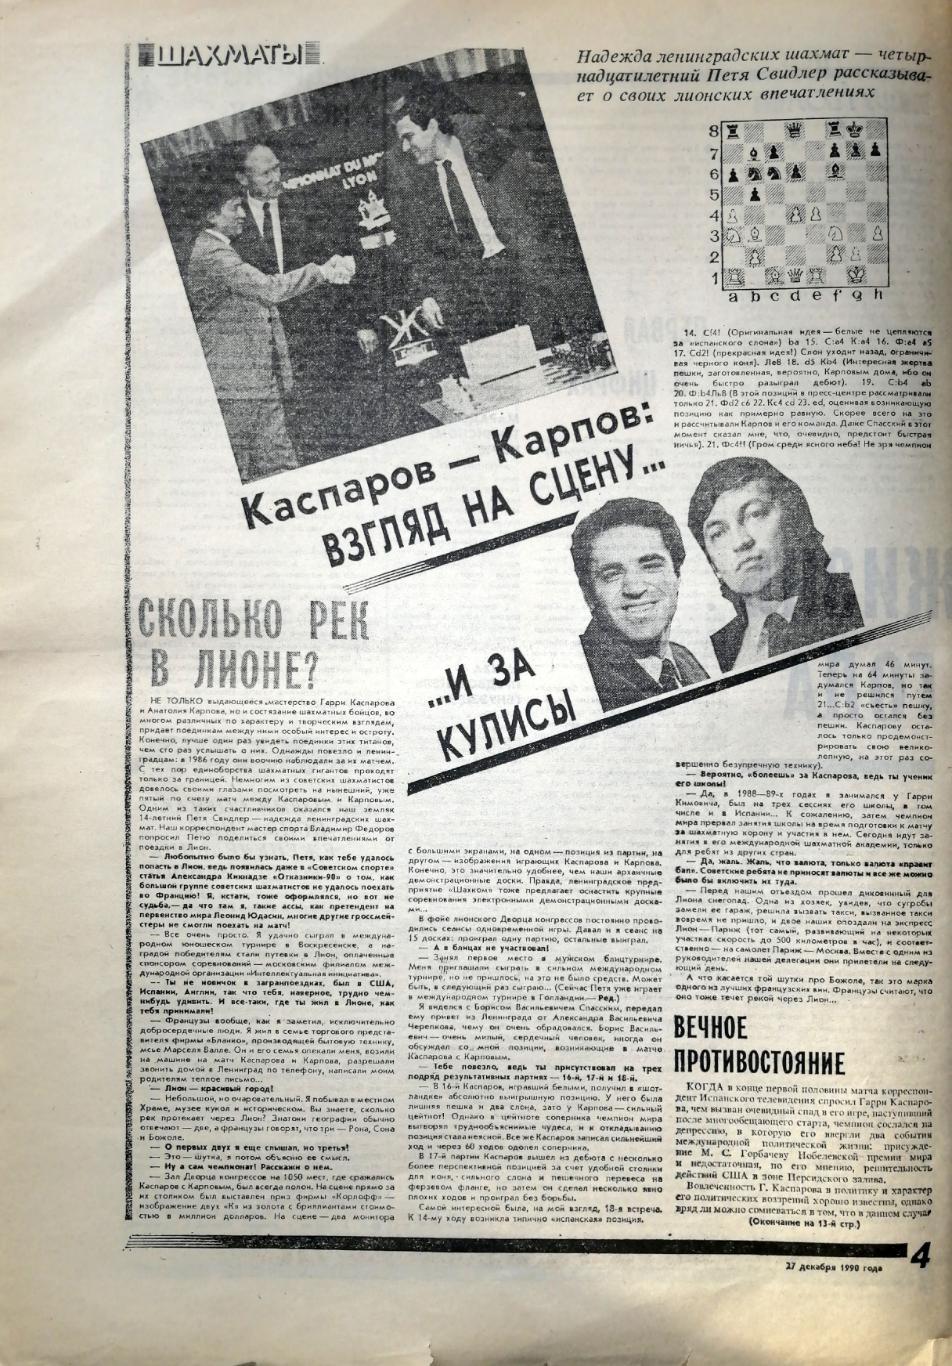 Спорт. Человек. Время (Ленинград). №00 (27.12.1990) 2